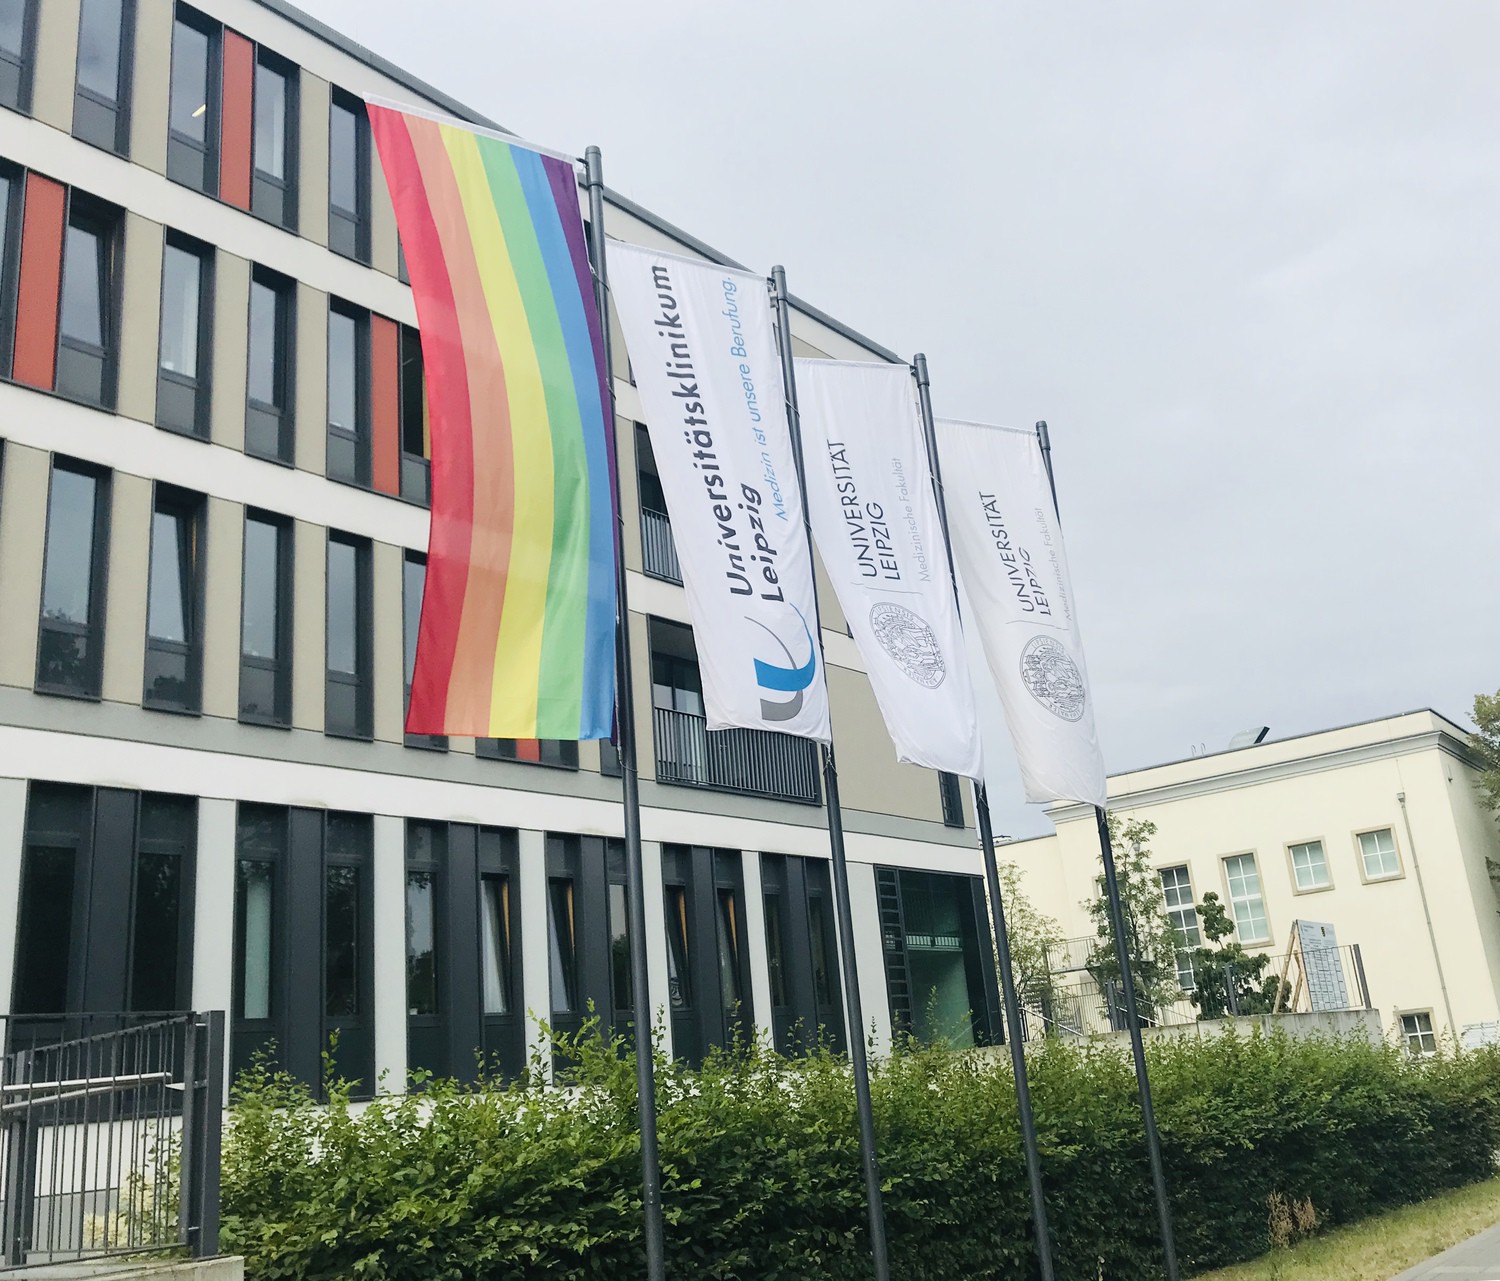 Bereits die ganze Woche weht die Regenbogenfahne, das Symbol der internationalen queeren Bewegung gut sichtbar in der Liebigstraße. Damit unterstützt das UKL den Christopher-Street-Day (CSD) und setzt ein Zeichen der Akzeptanz, Offenheit und gesellschaftlichen Vielfalt.